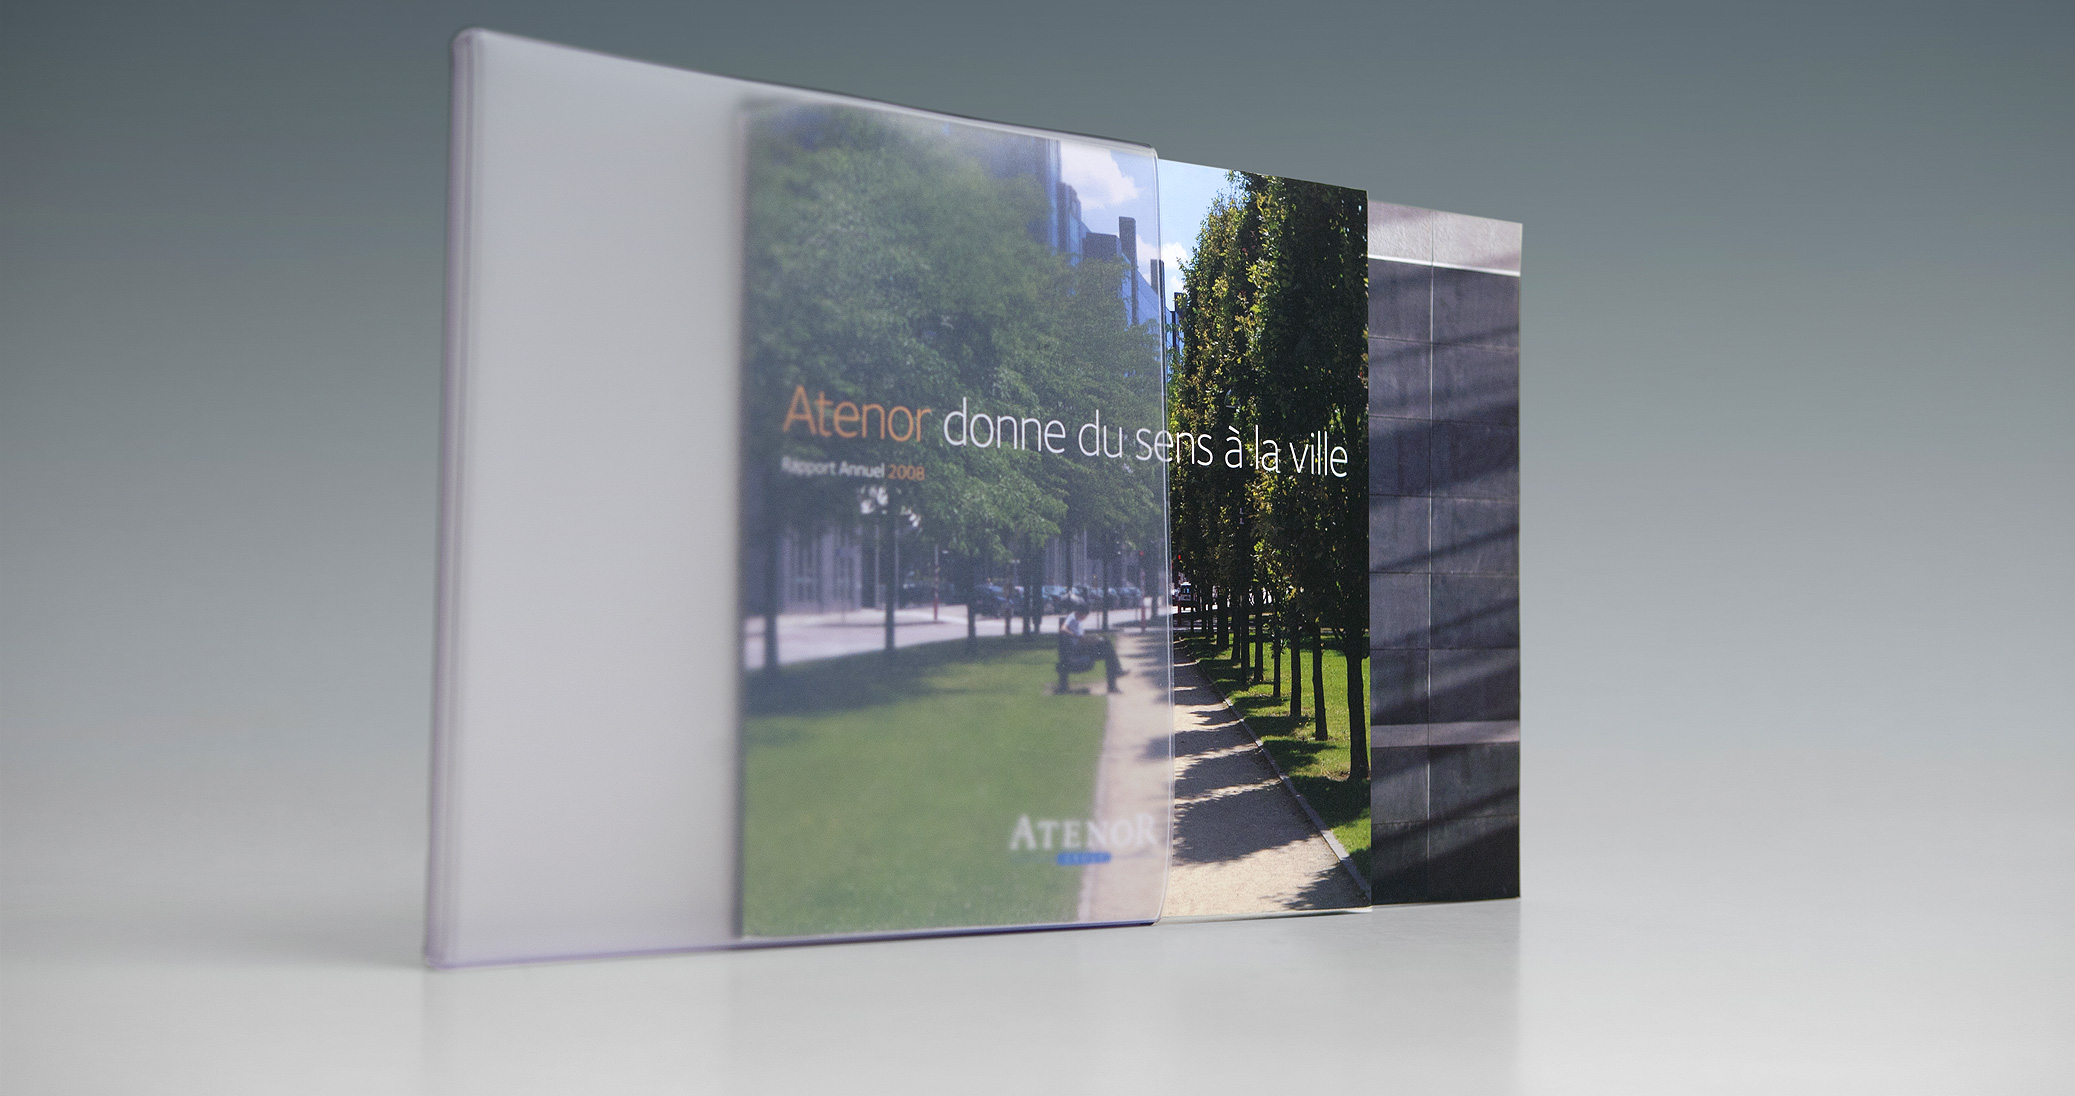 Atenor - Annual Report 2008